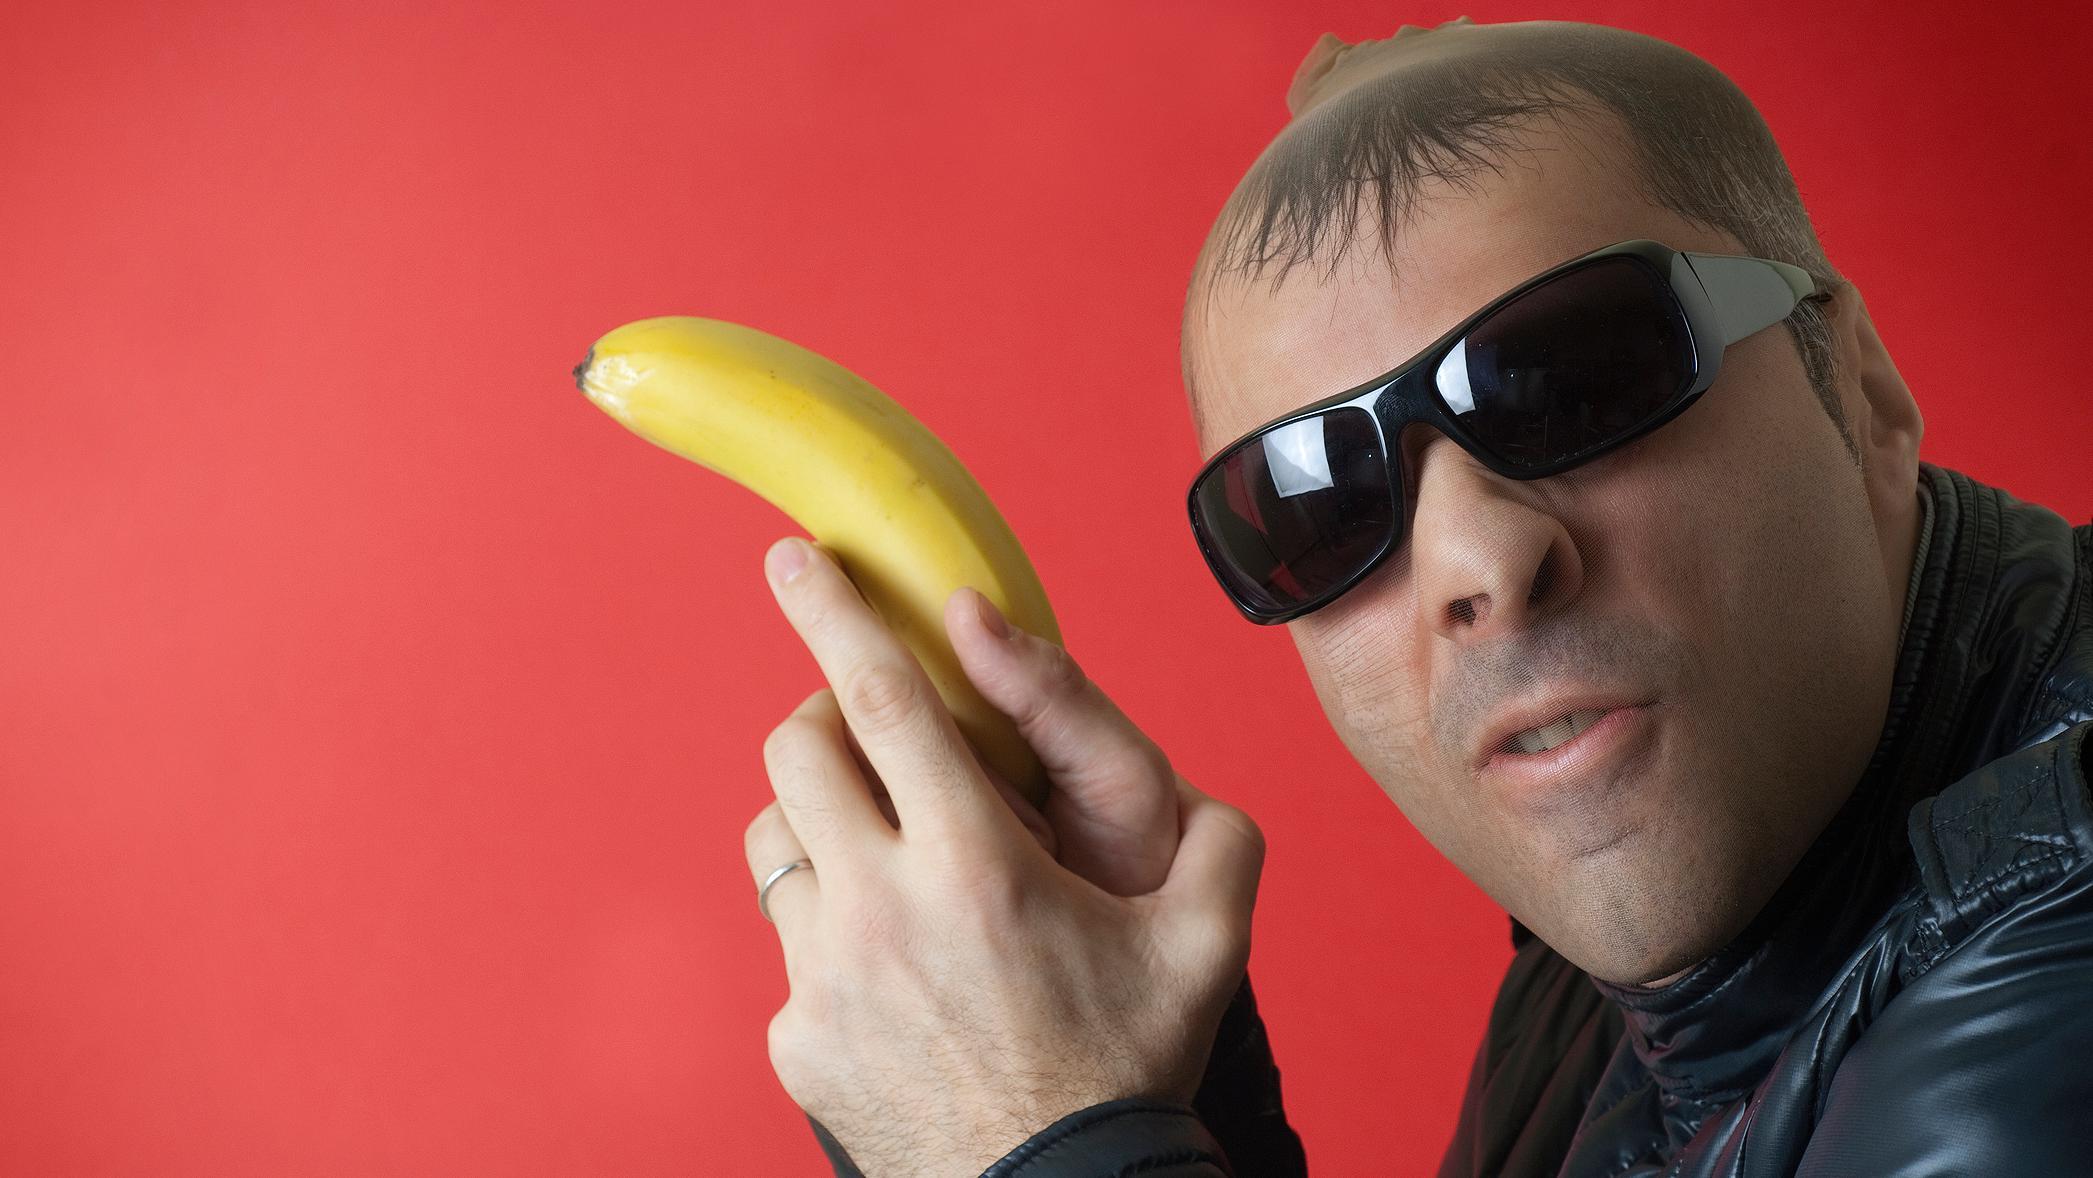 Ladrón con banano en mano